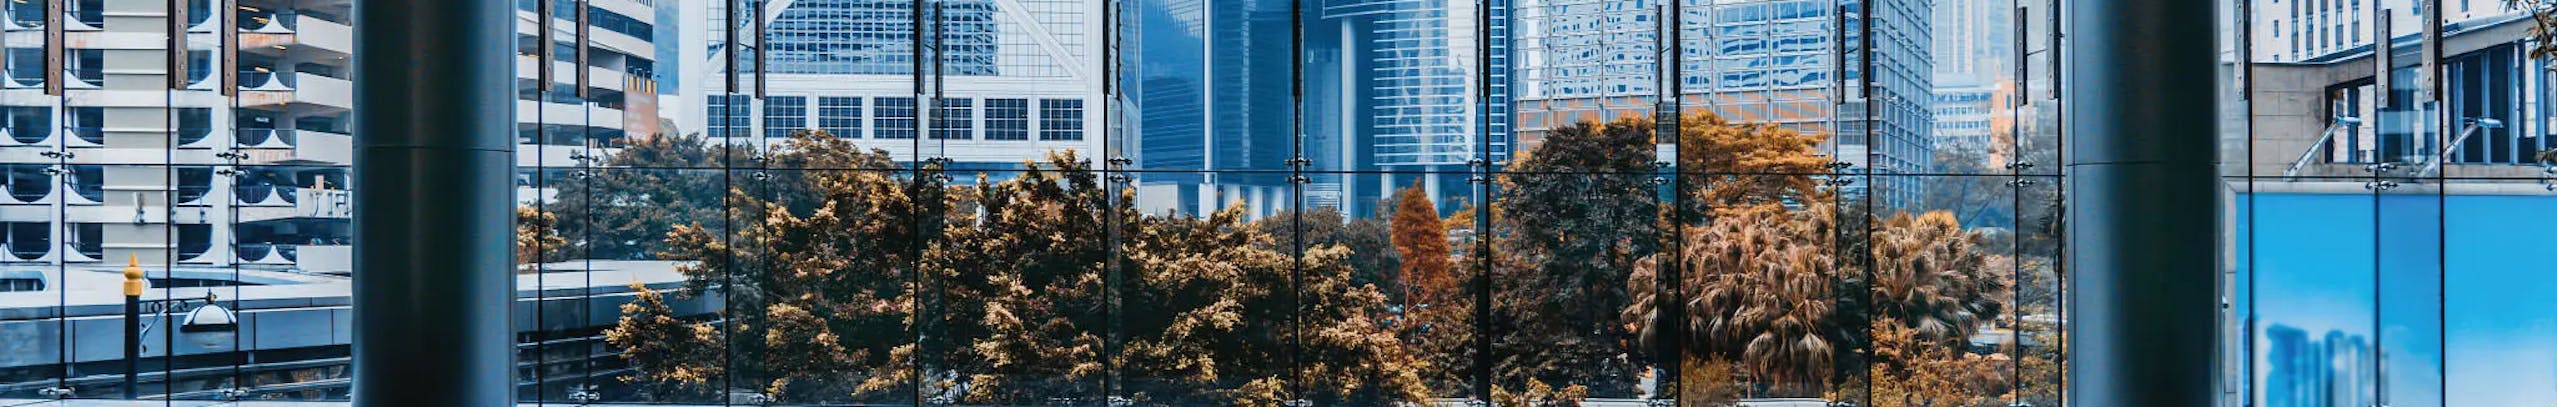 Glaswand von Innen bei einem großen Gebäude.